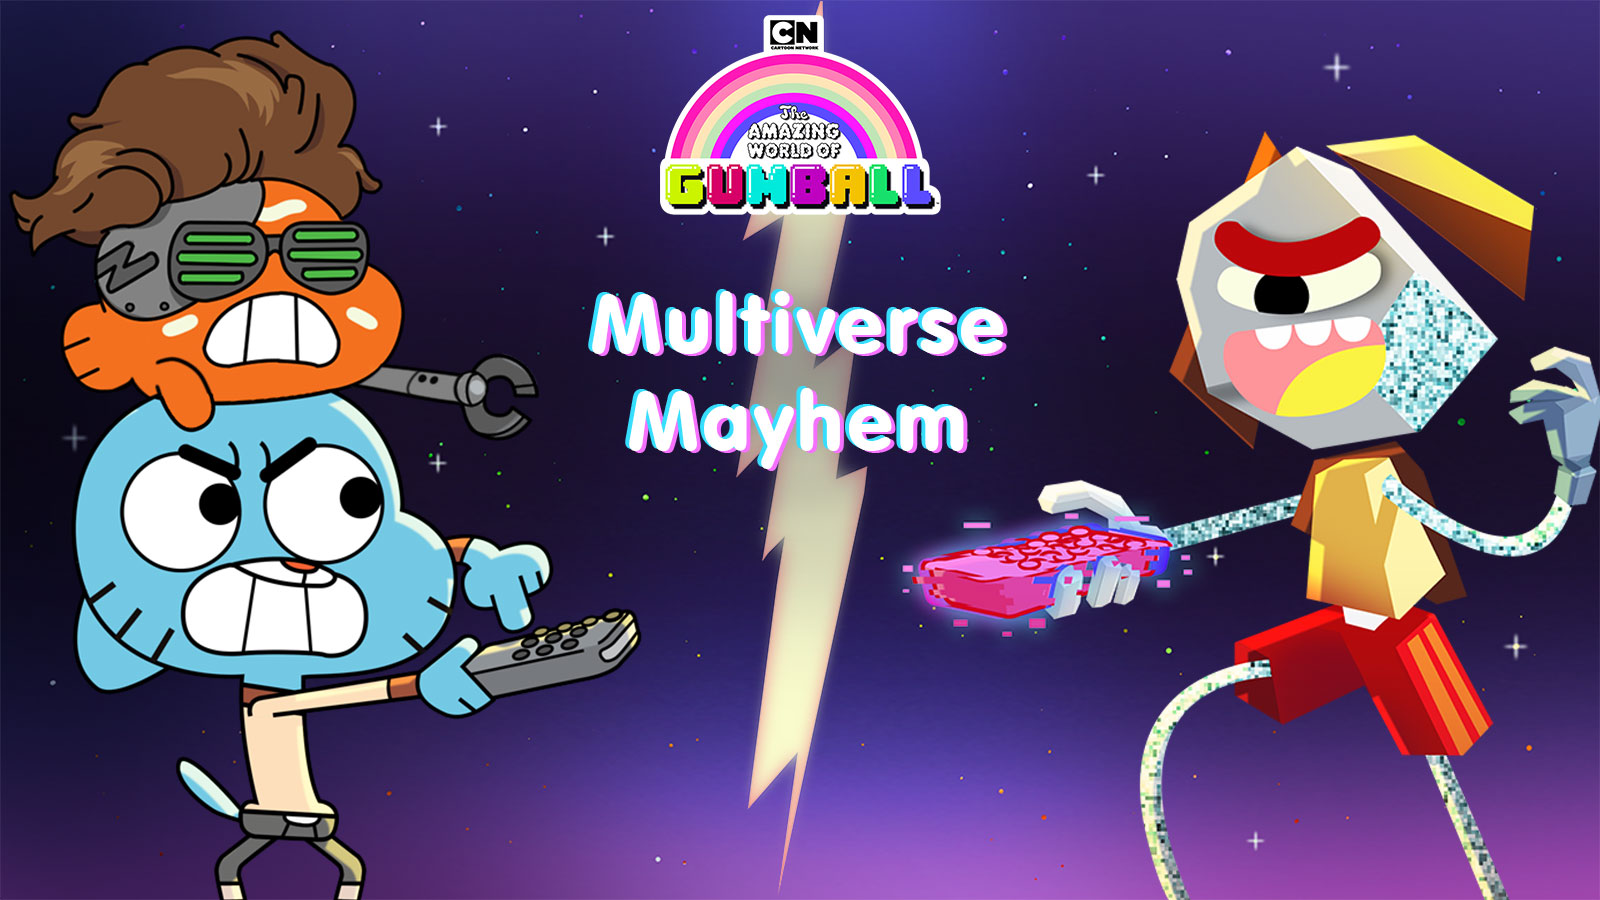 Multiverse Mayhem, Gumball games